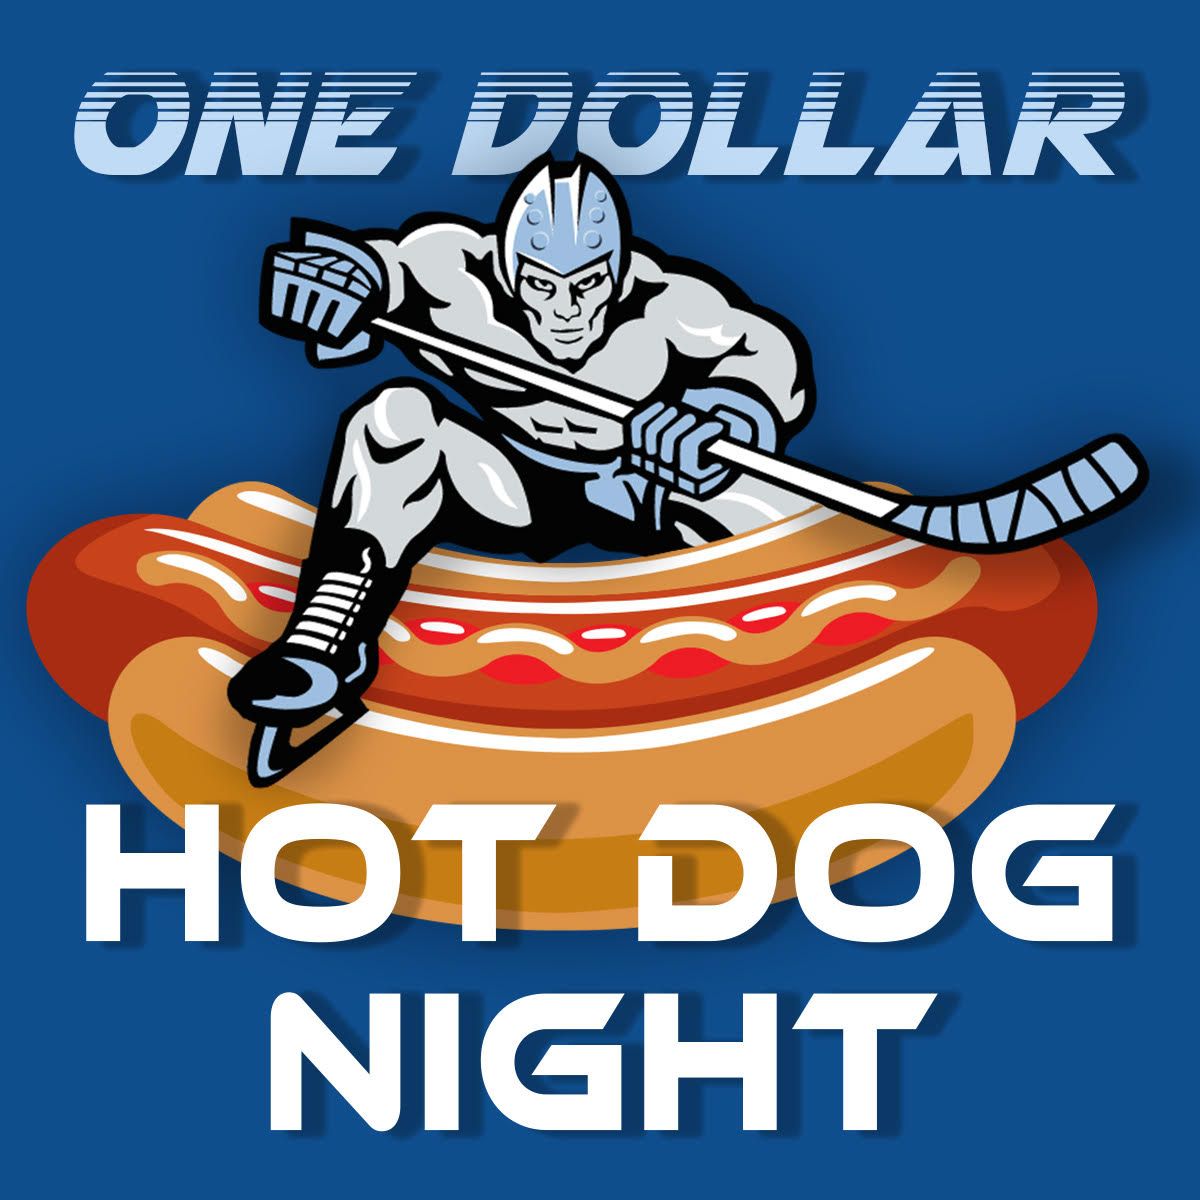 $1 Hot Dog Night